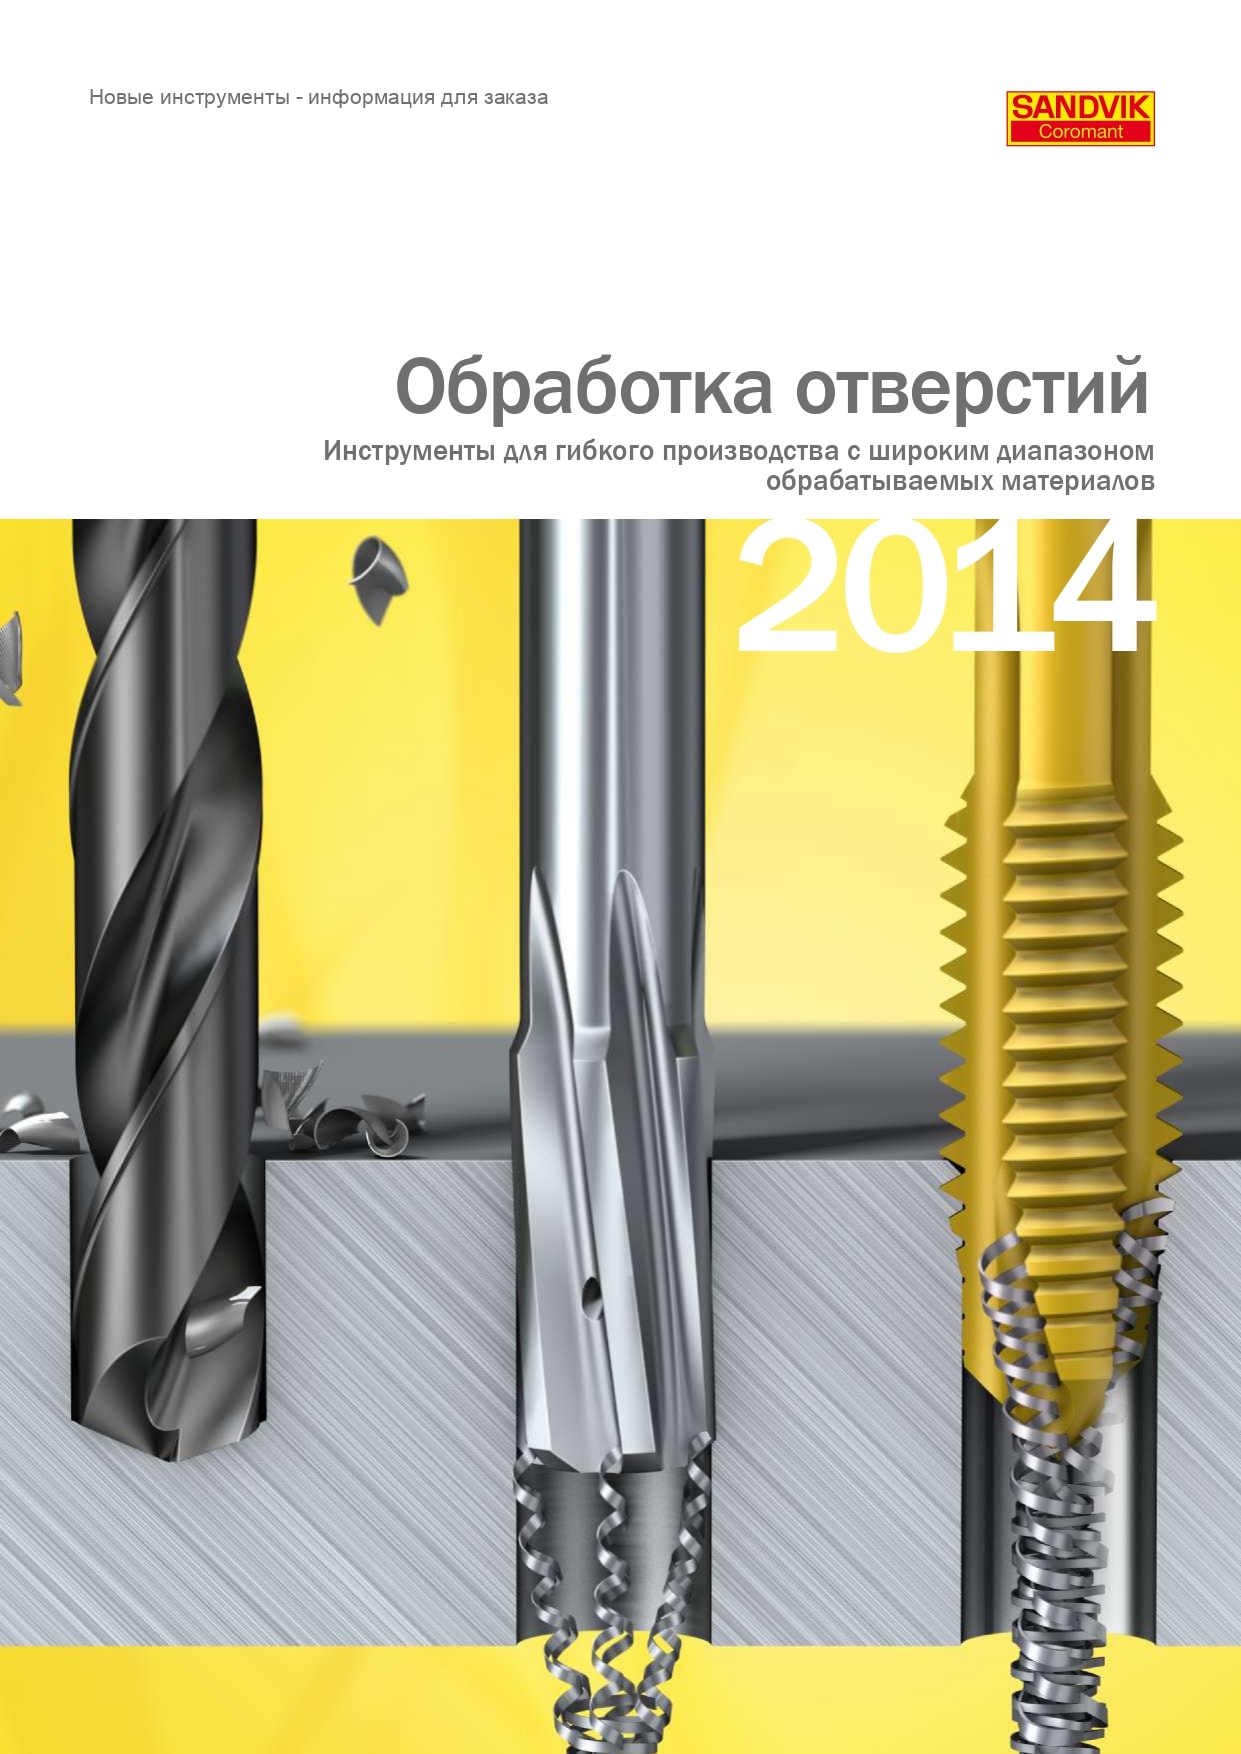 Обработка отверстий 2014 - Инструменты для гибкого производства с широким диапазоном обрабатываемых материалов